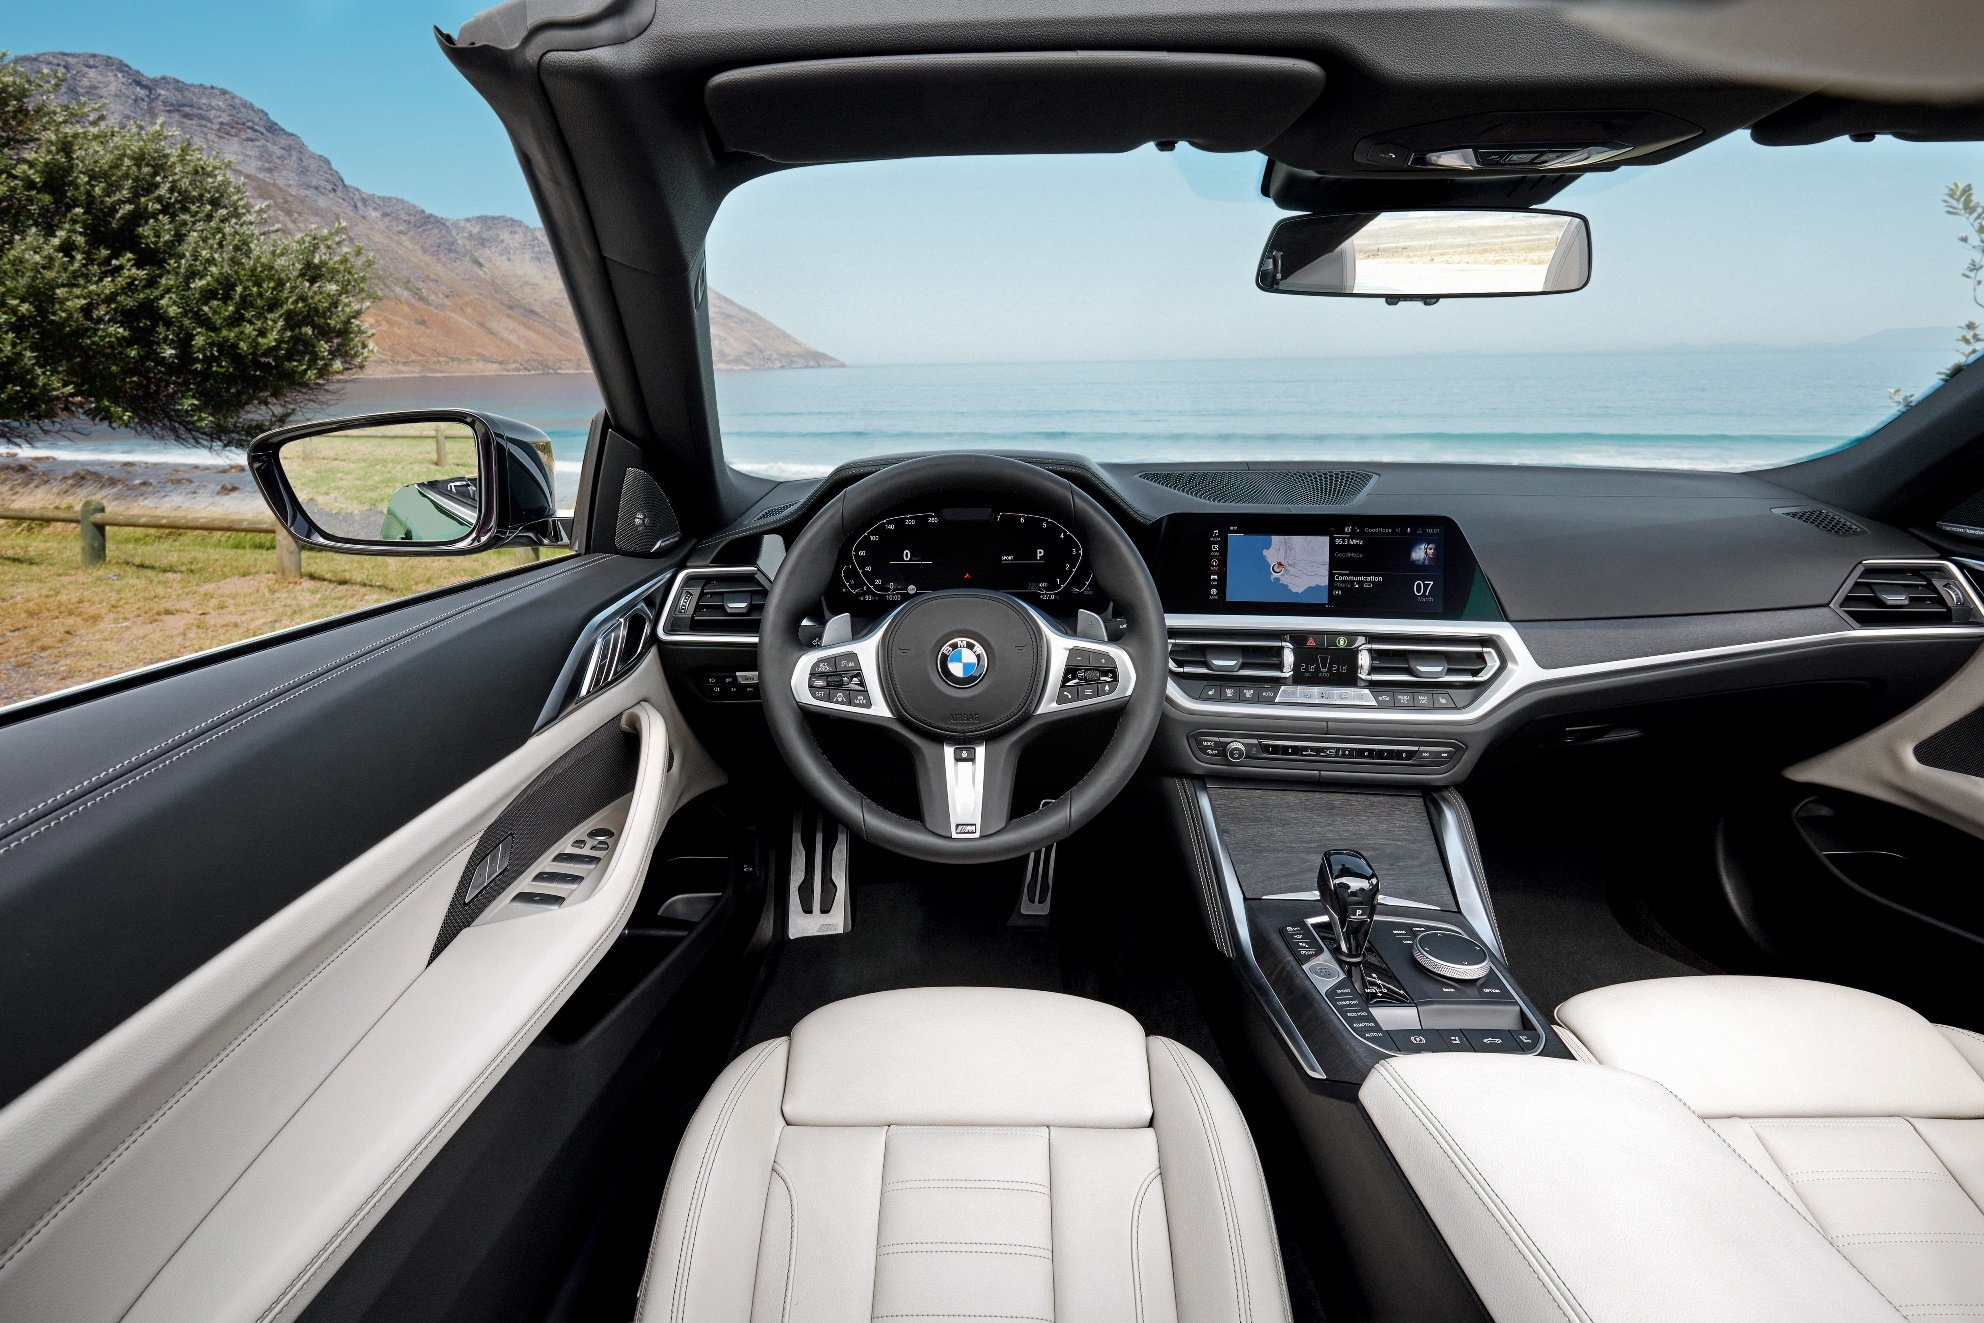 BMW 4 Cabrio začíná na českém trhu s cenou 1 319 500 Kč s motorem o výkonu 135 kW (184 k)